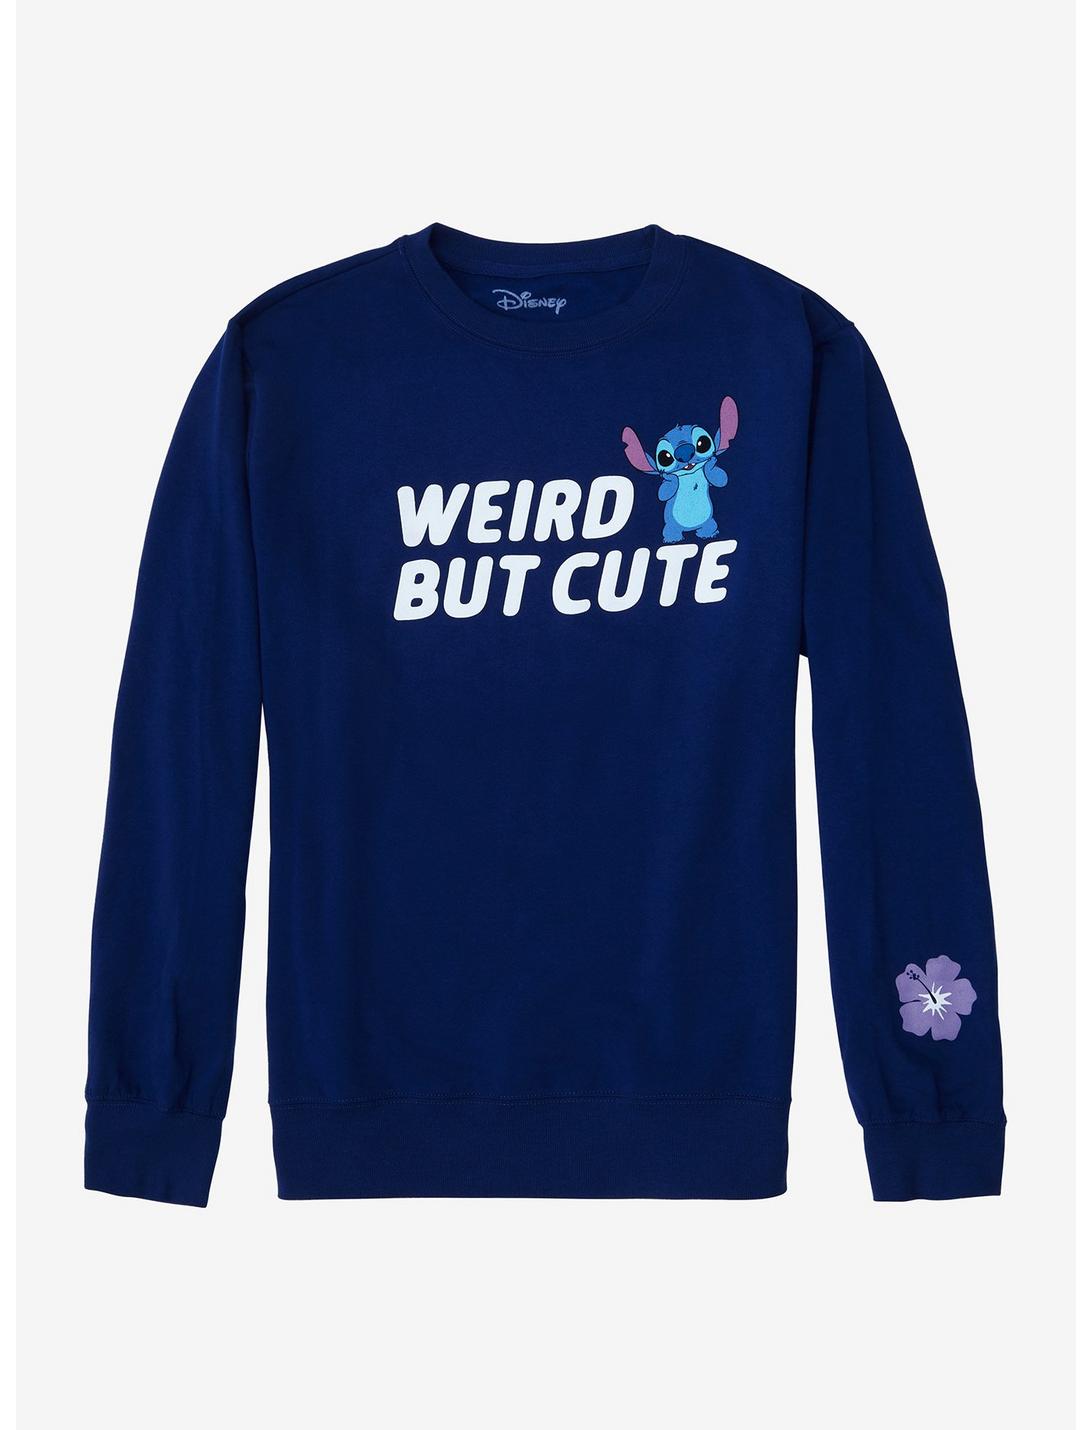 Disney Lilo & Stitch Weird But Cute Girls Sweatshirt Plus Size, MULTI, hi-res